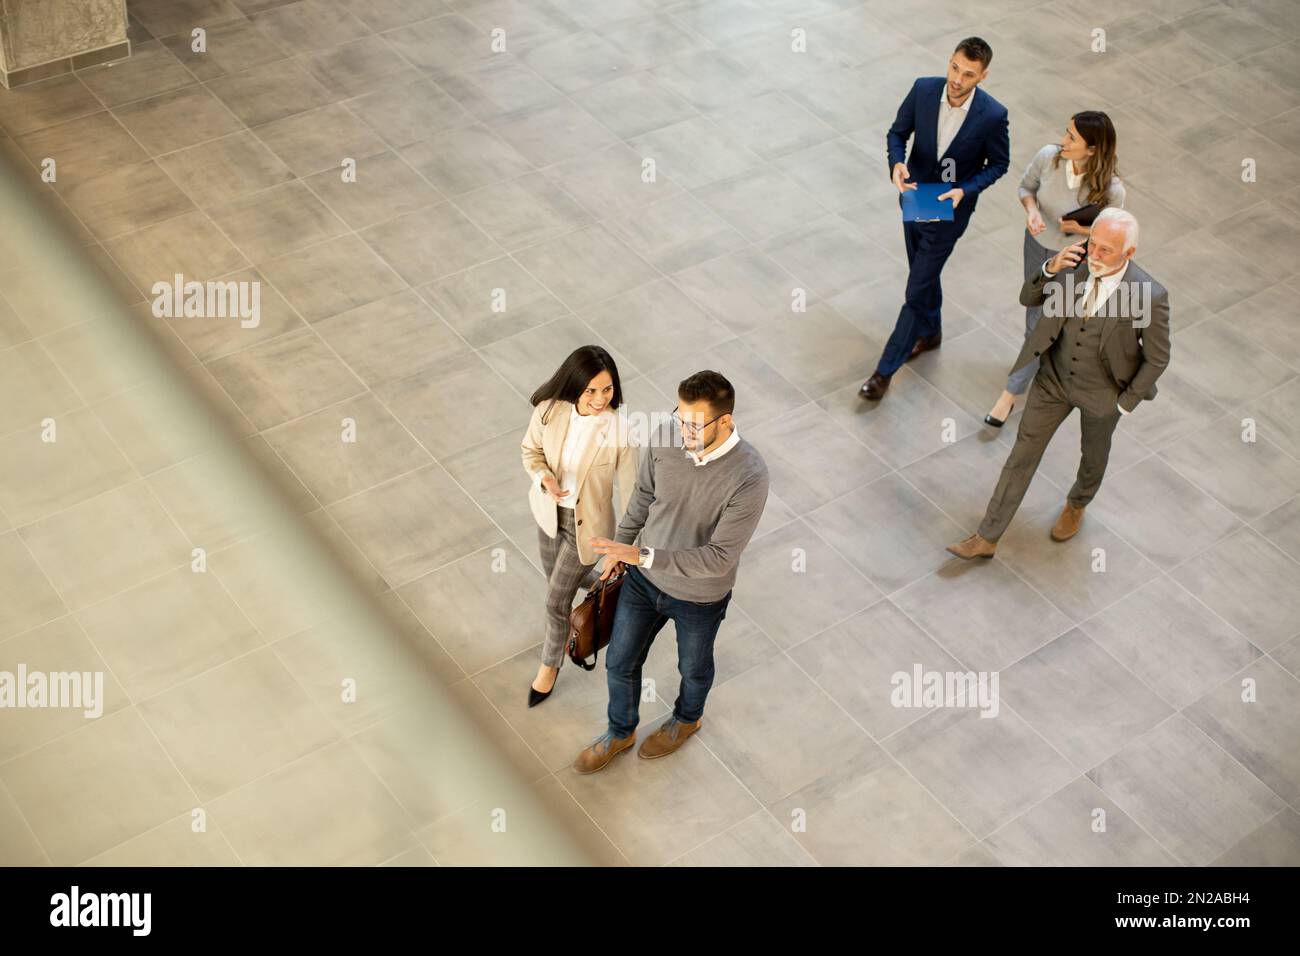 Un groupe de jeunes et de personnes âgées en voyage d'affaires se prompe dans un couloir de bureau, capturé dans une vue aérienne. Ils sont vêtus d'une tenue habillée, ils marchent avec humour Banque D'Images